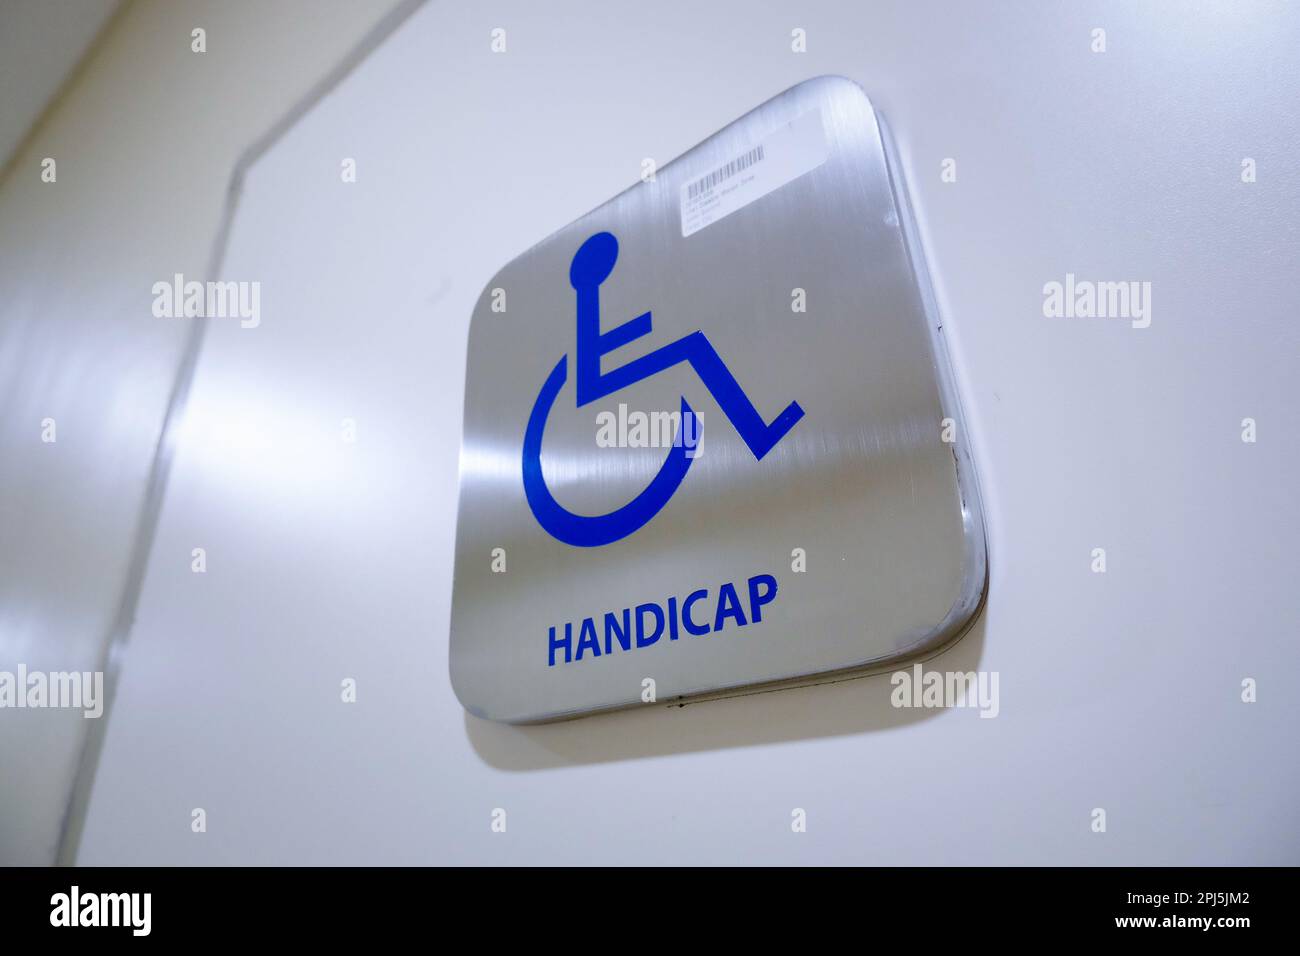 Photo à faible angle d'un panneau de toilettes handicapés en acier inoxydable avec une icône bleue. Favorise l'accessibilité et l'inclusion dans les espaces publics. Universellement recog Banque D'Images